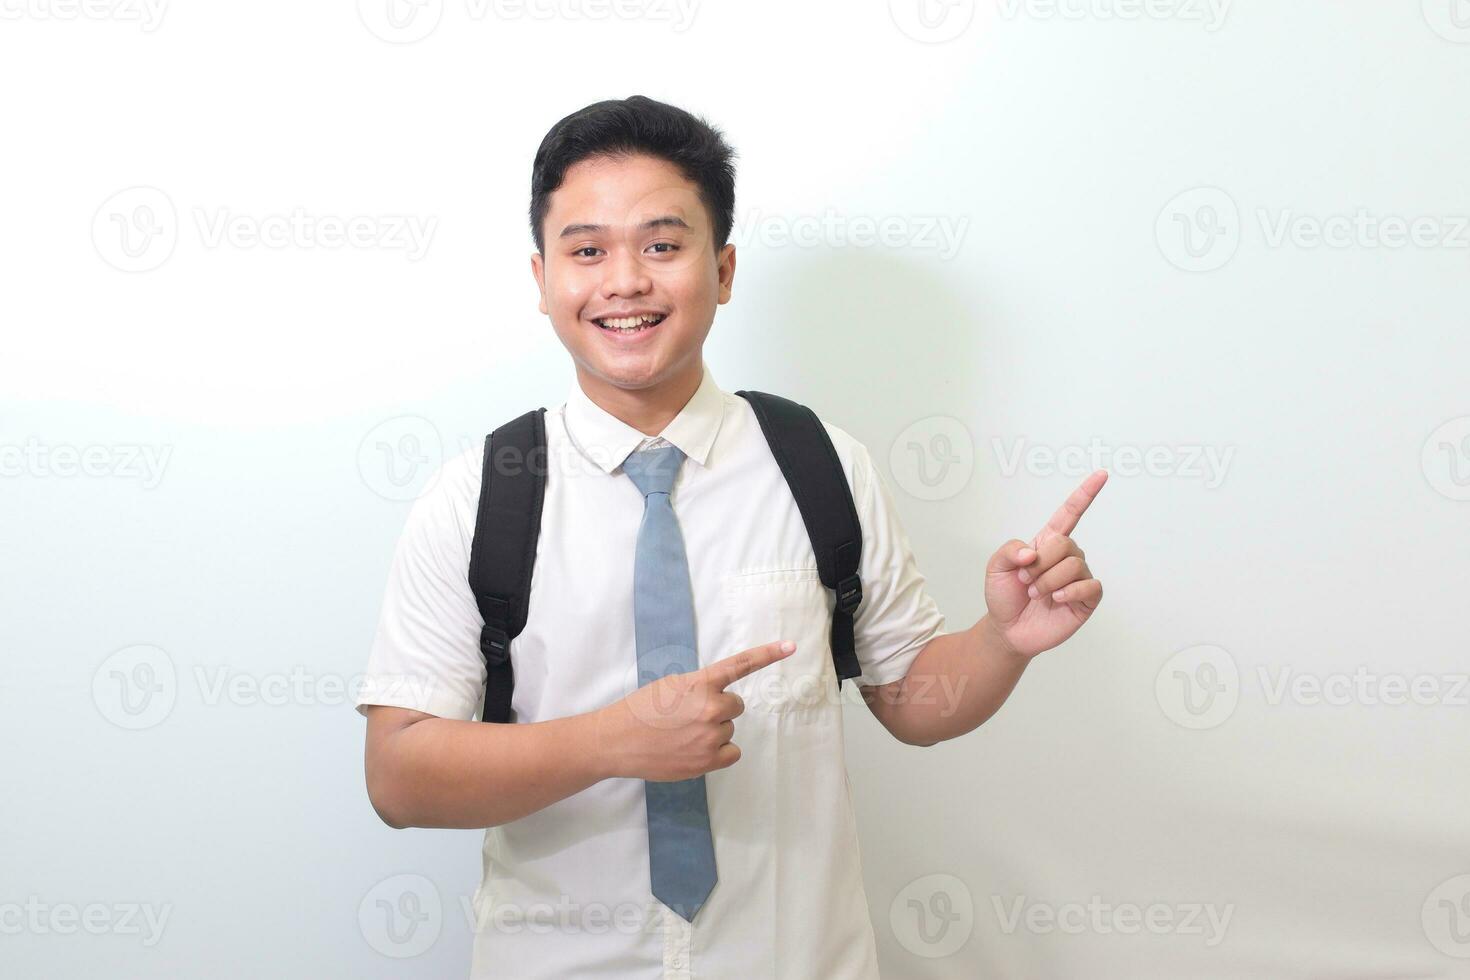 Indonesisch senior hoog school- leerling vervelend wit overhemd uniform met grijs stropdas tonen Product, richten Bij iets en lachend. geïsoleerd beeld Aan wit achtergrond foto